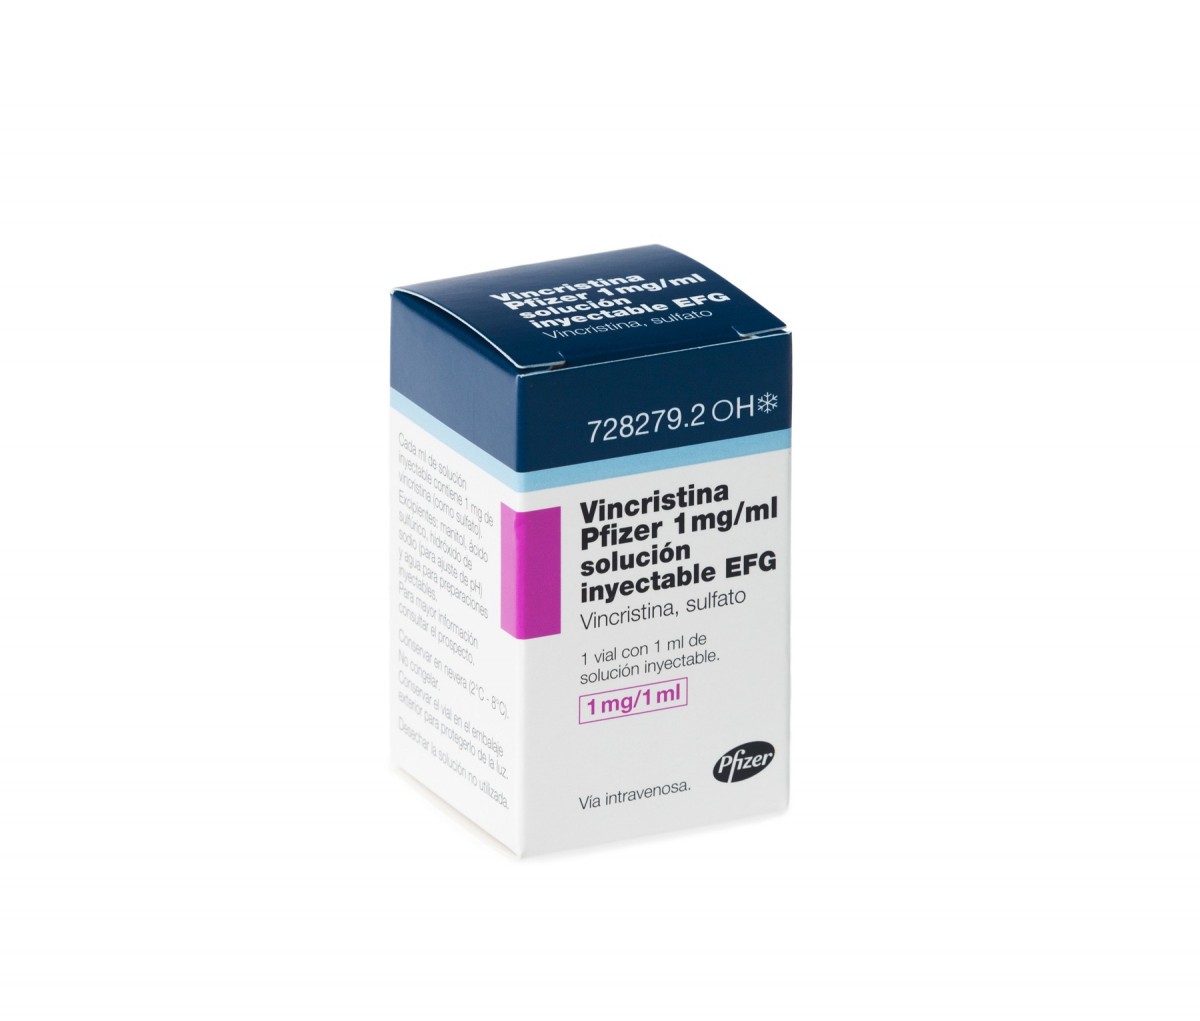 VINCRISTINA PFIZER 1 mg/ml SOLUCION INYECTABLE EFG , 1 vial con 1 ml fotografía del envase.